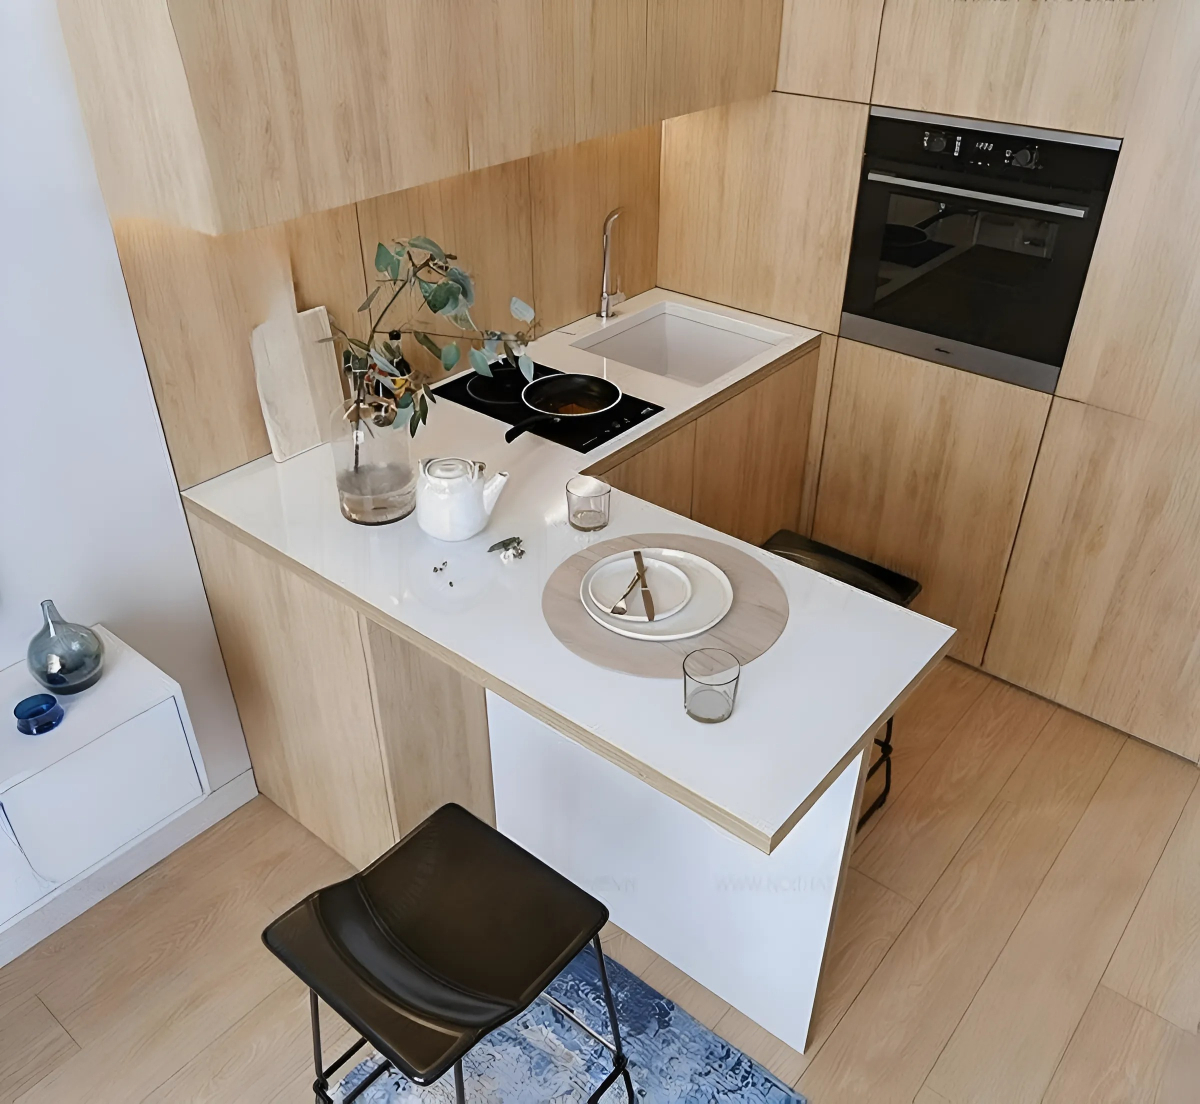 Nội thất phòng bếp chung cư tối giản đề cao sự hiện đại và tiện lợi